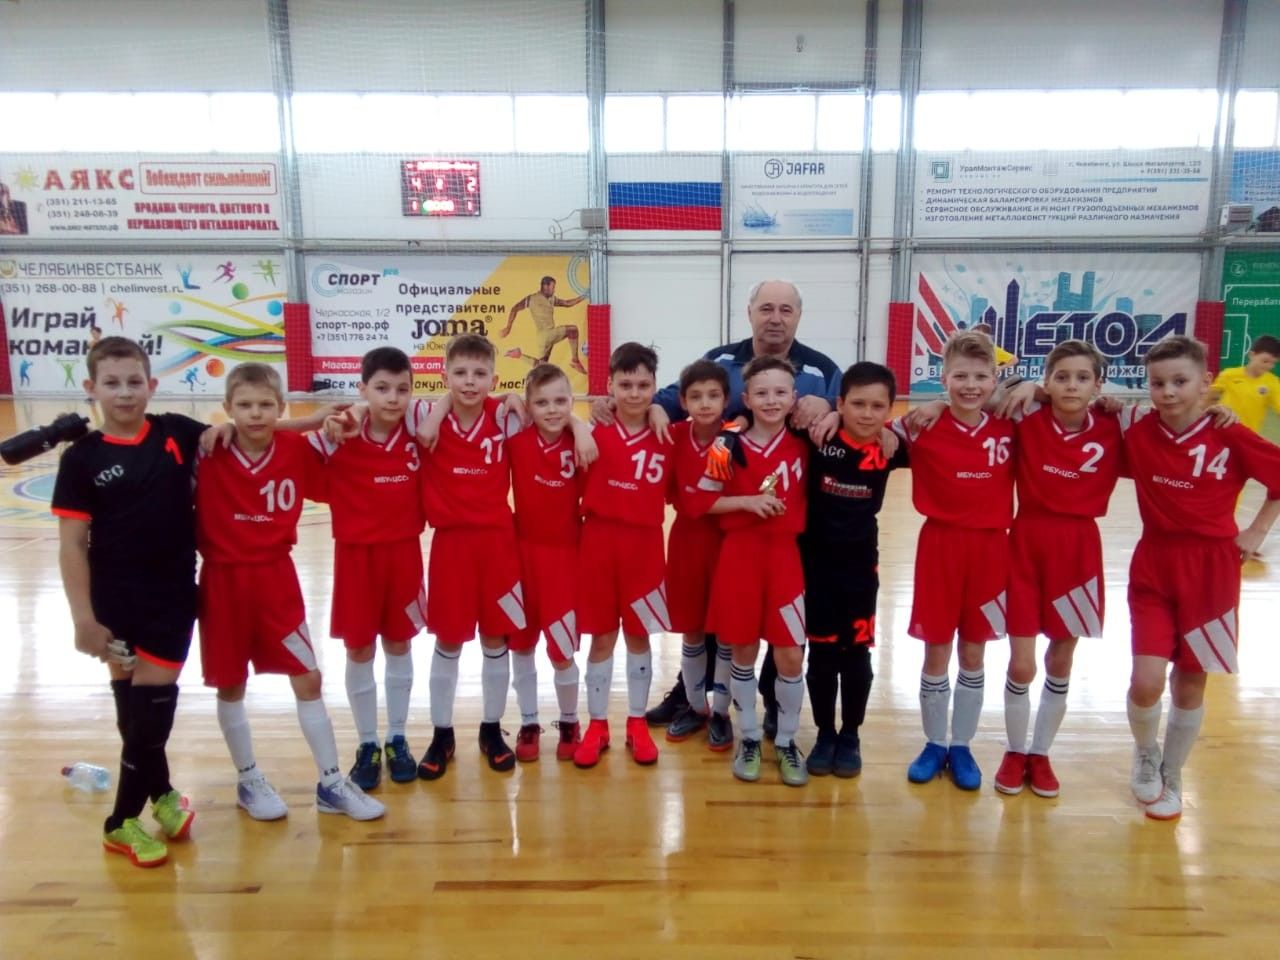 Футболисты команды Центра спортивных сооружений стали пятыми на чемпионате России по мини-футболу